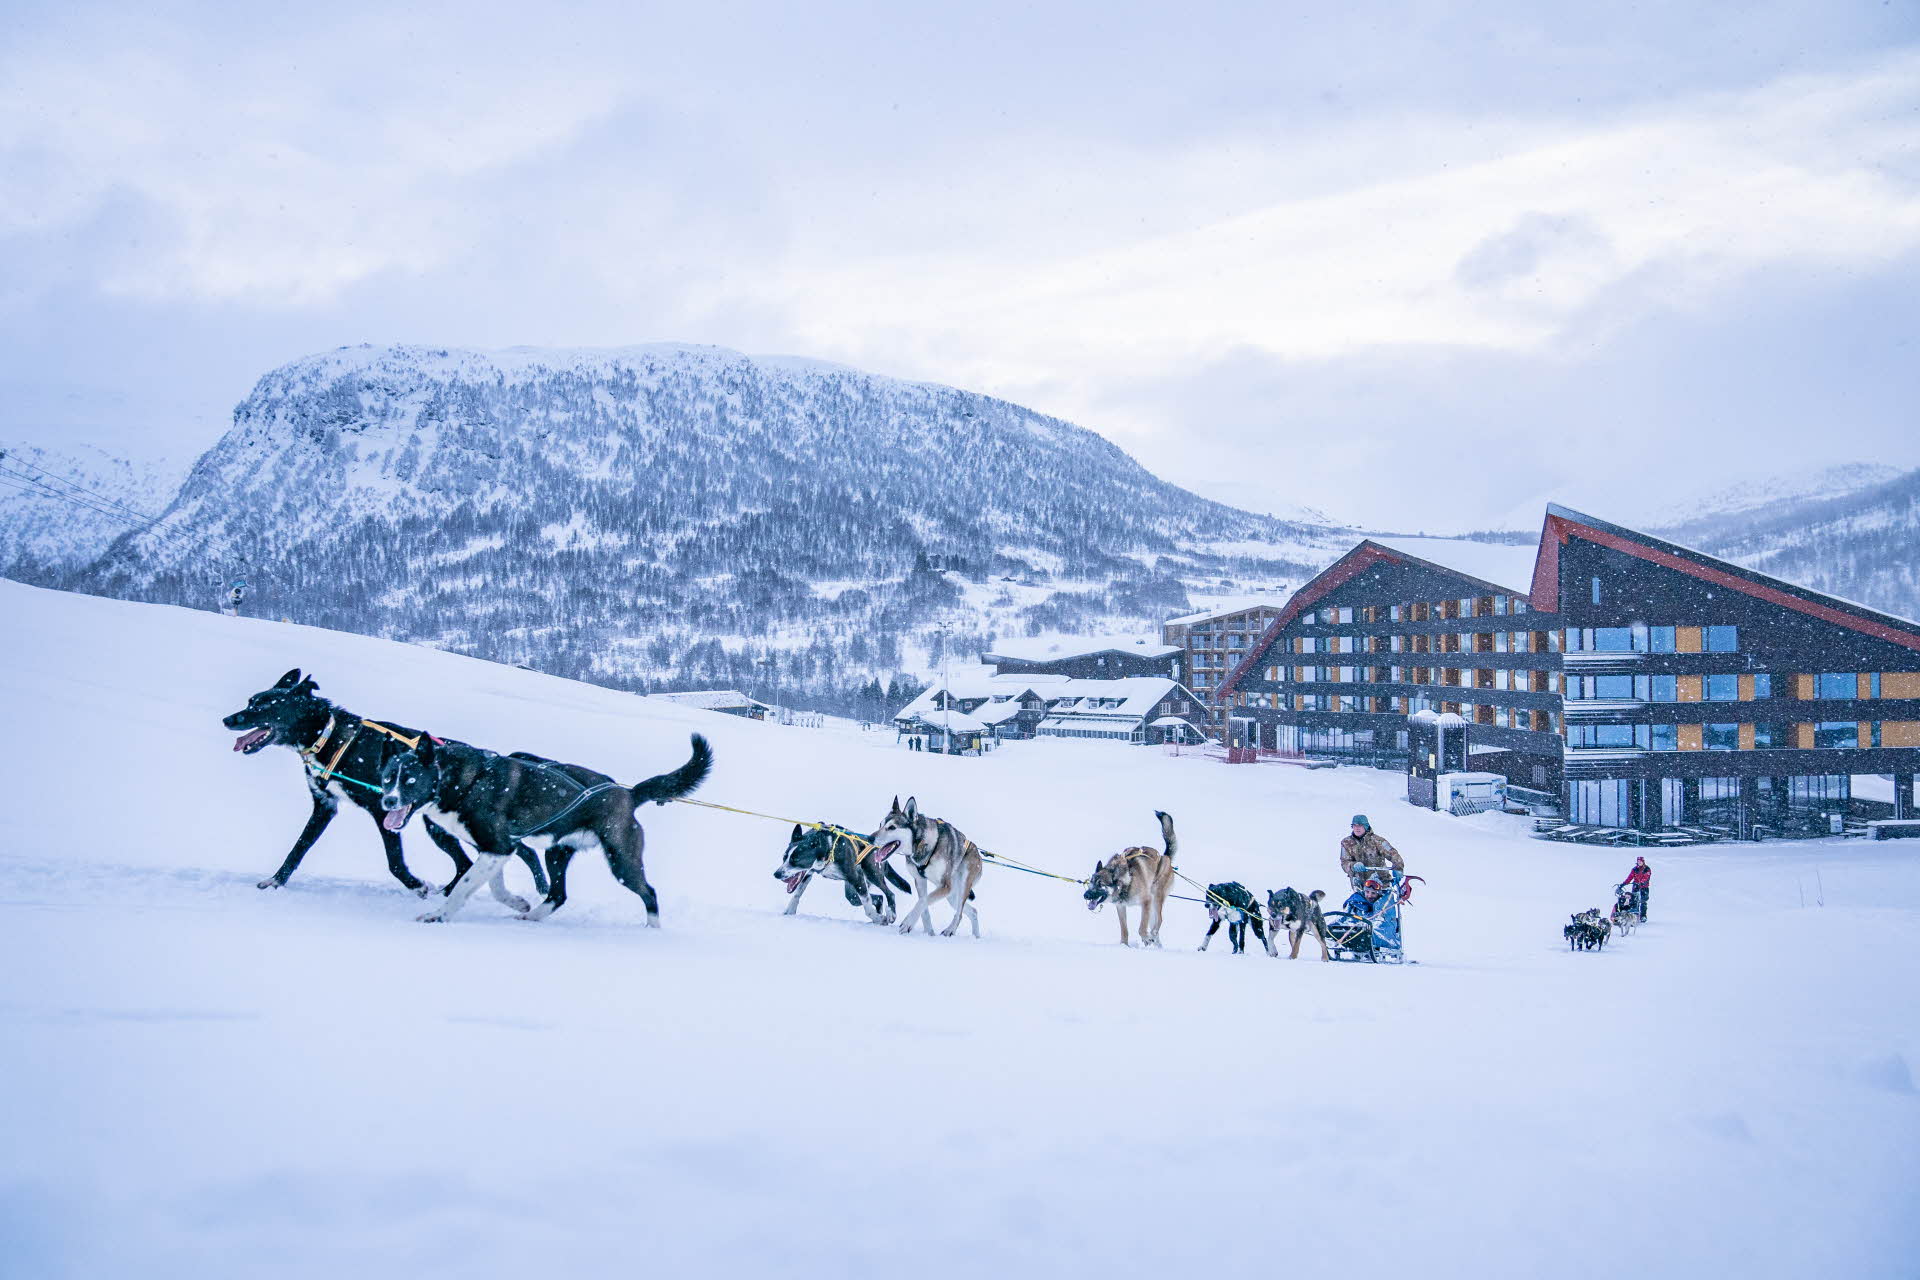 Unos perros huskies tirando de un trineo por una colina desde el Hotel Myrkdalen con las montañas cubiertas de nieve al fondo